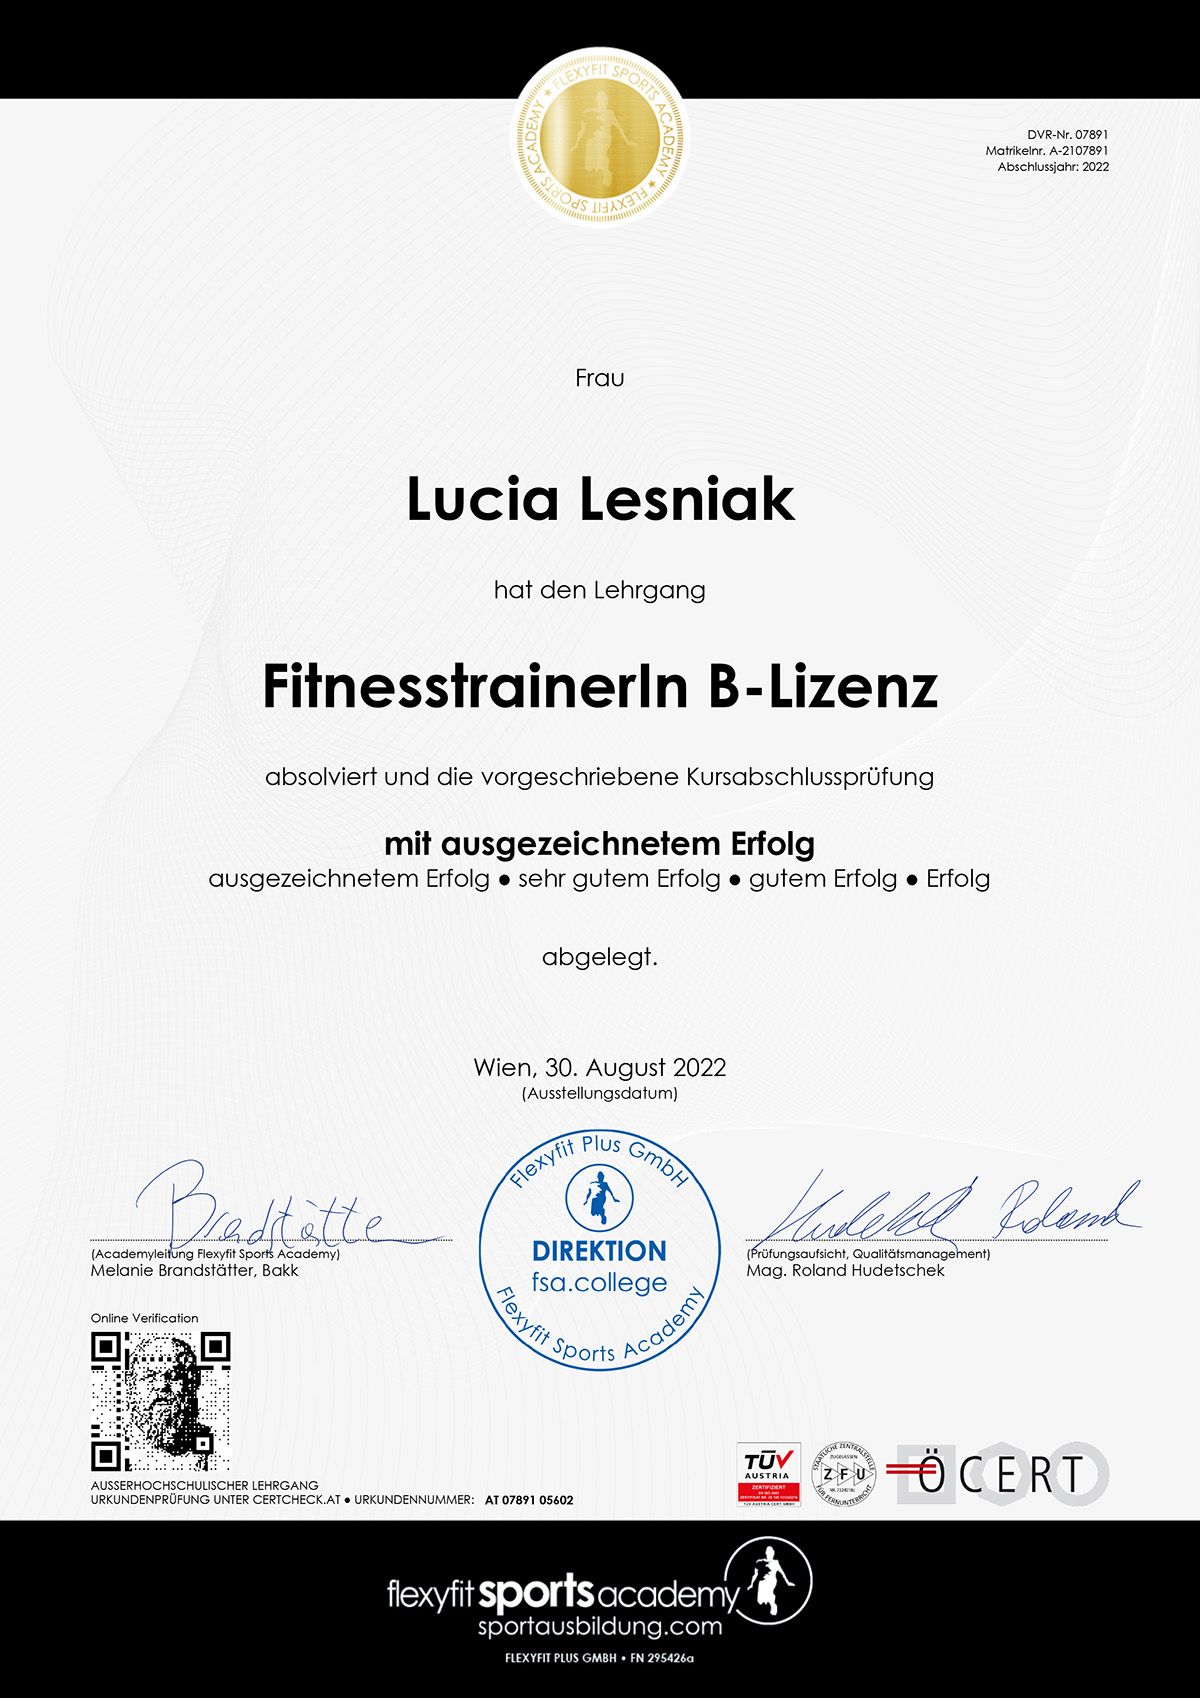 Web Diplom Flexyfit Academy Fitnesstrainerin B Lizenz